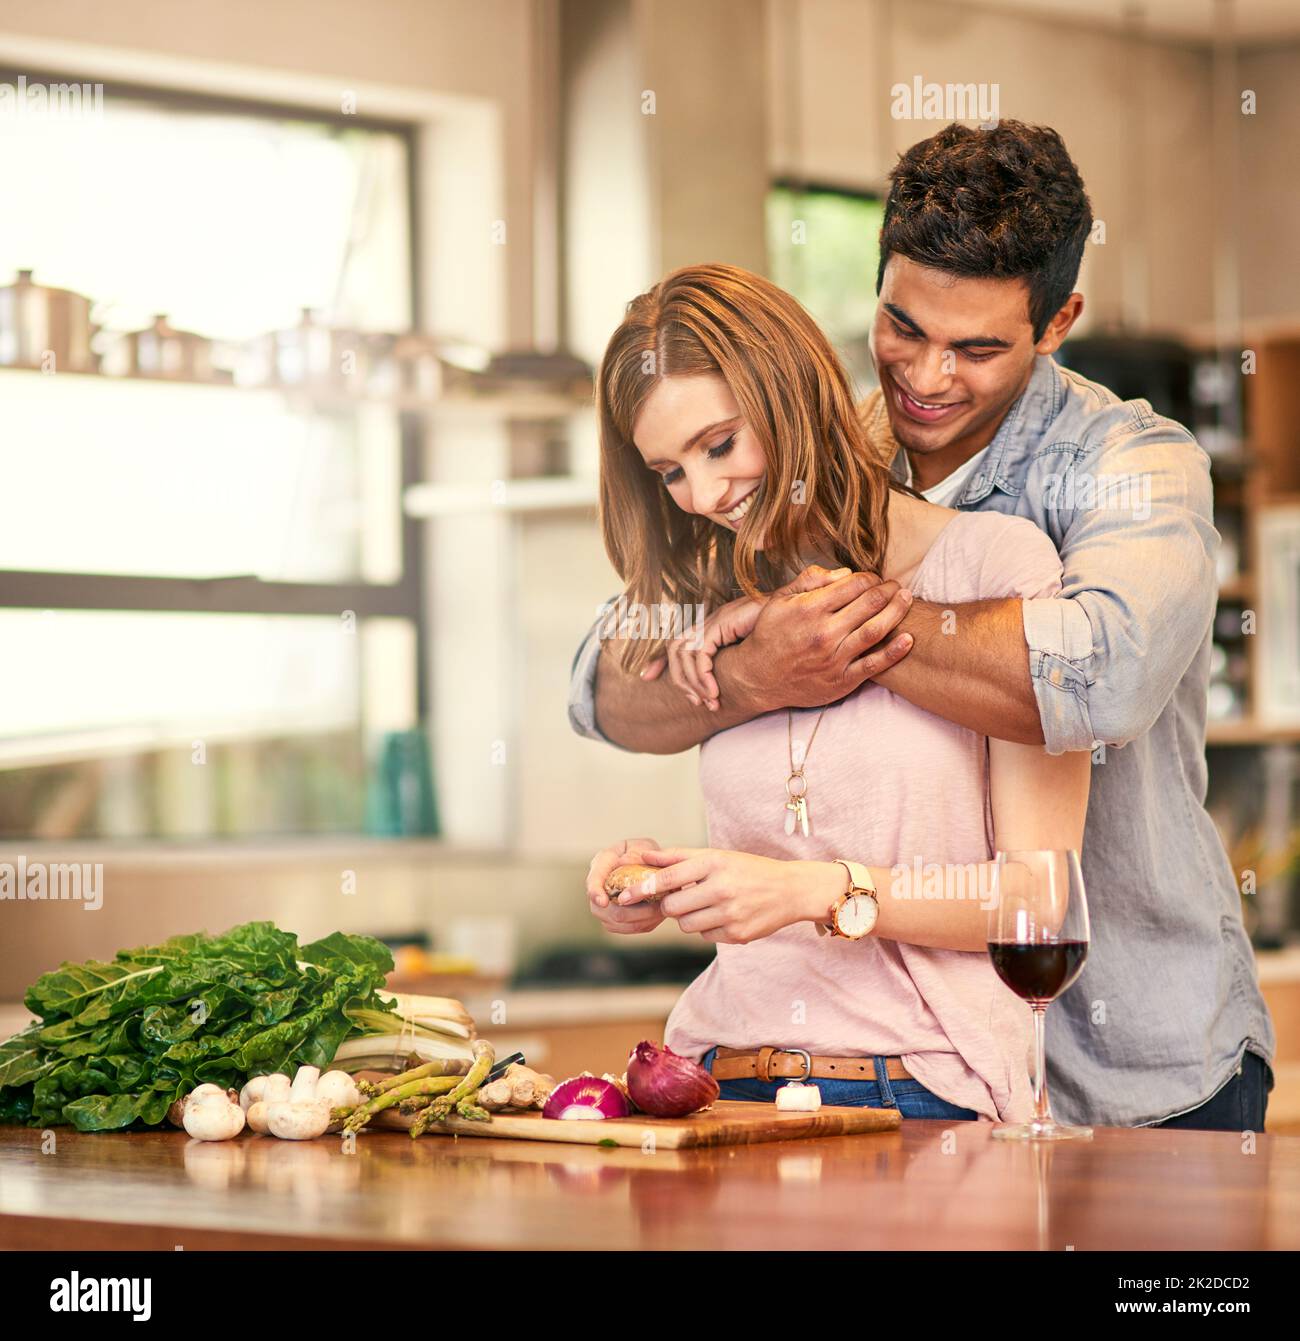 Essen ist Liebe für den Magen. Aufnahme eines jungen Mannes, der seine Frau umarmt, während sie das Abendessen zubereitet. Stockfoto